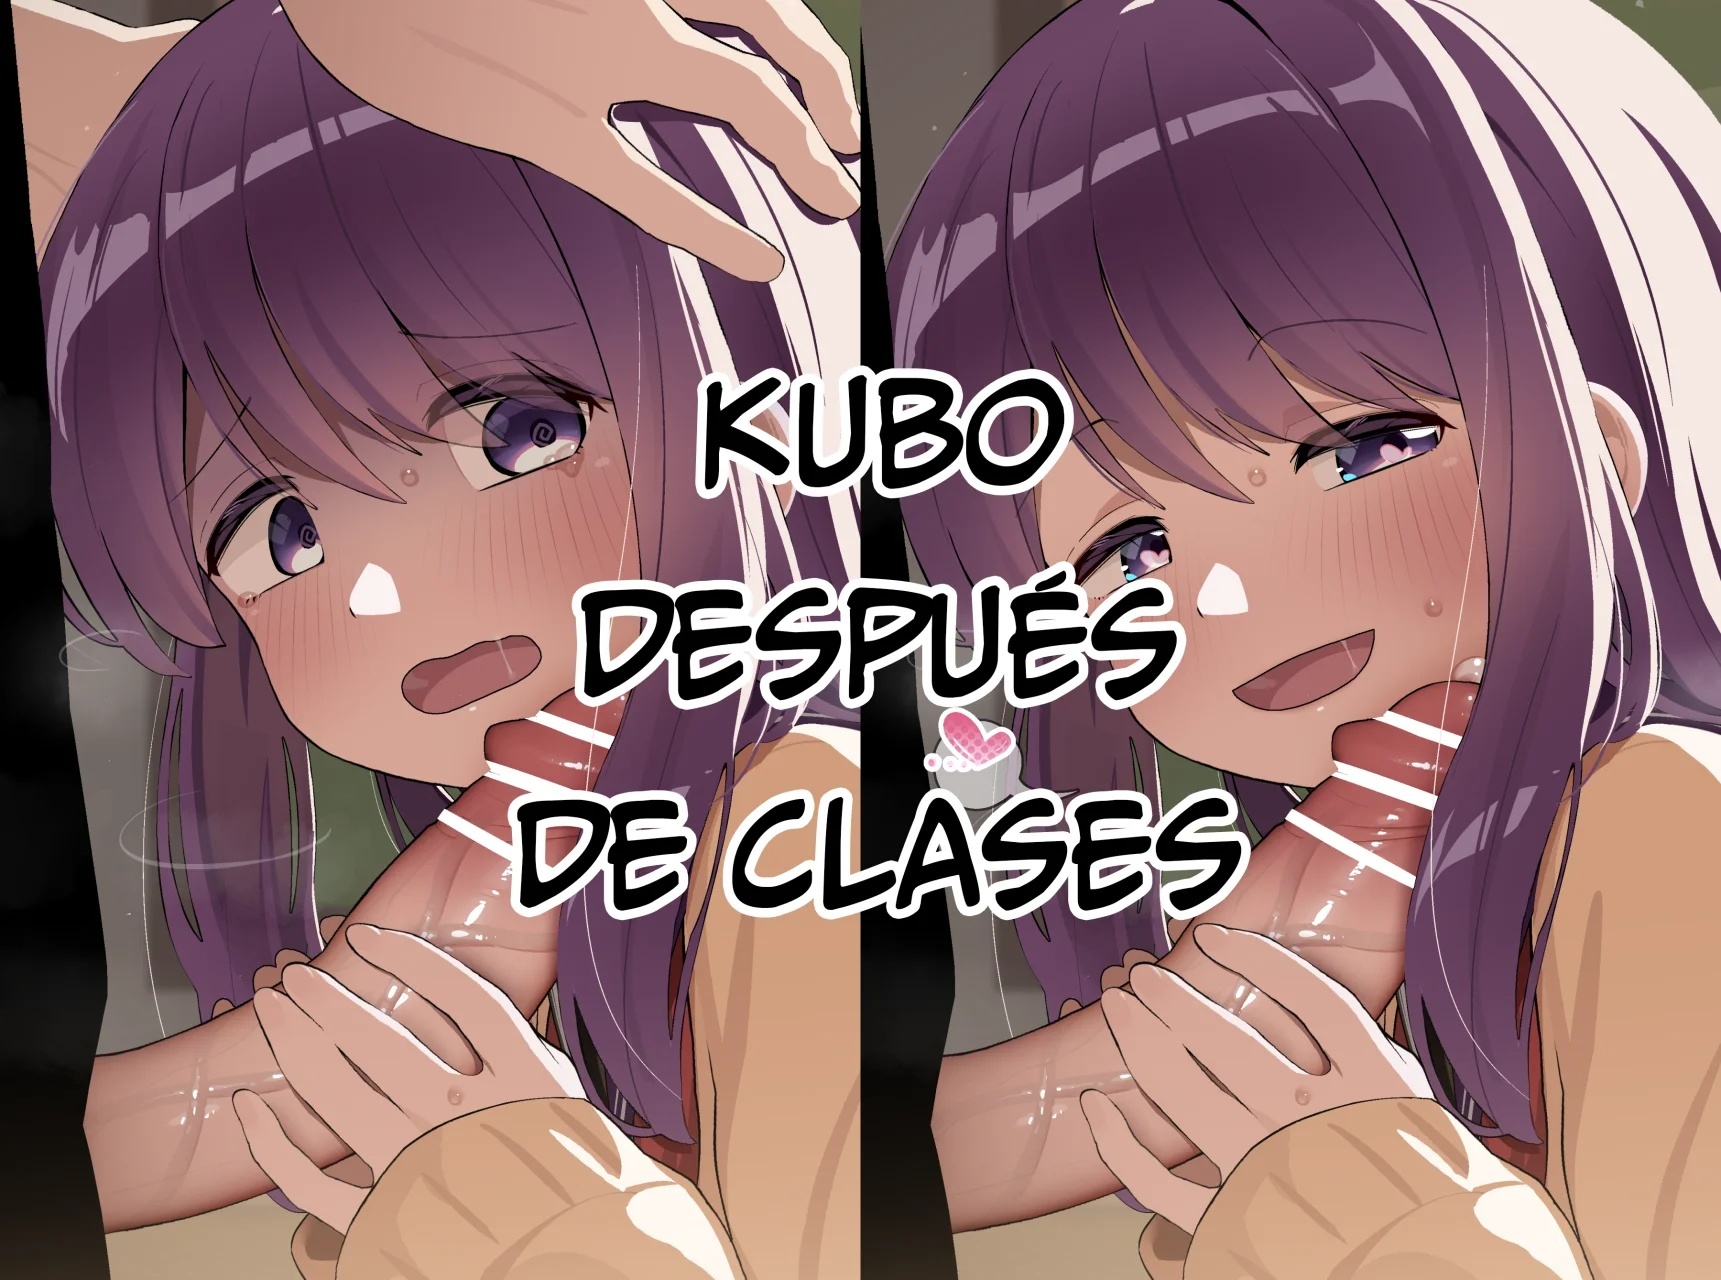 Kubo-san despues de clases - 0